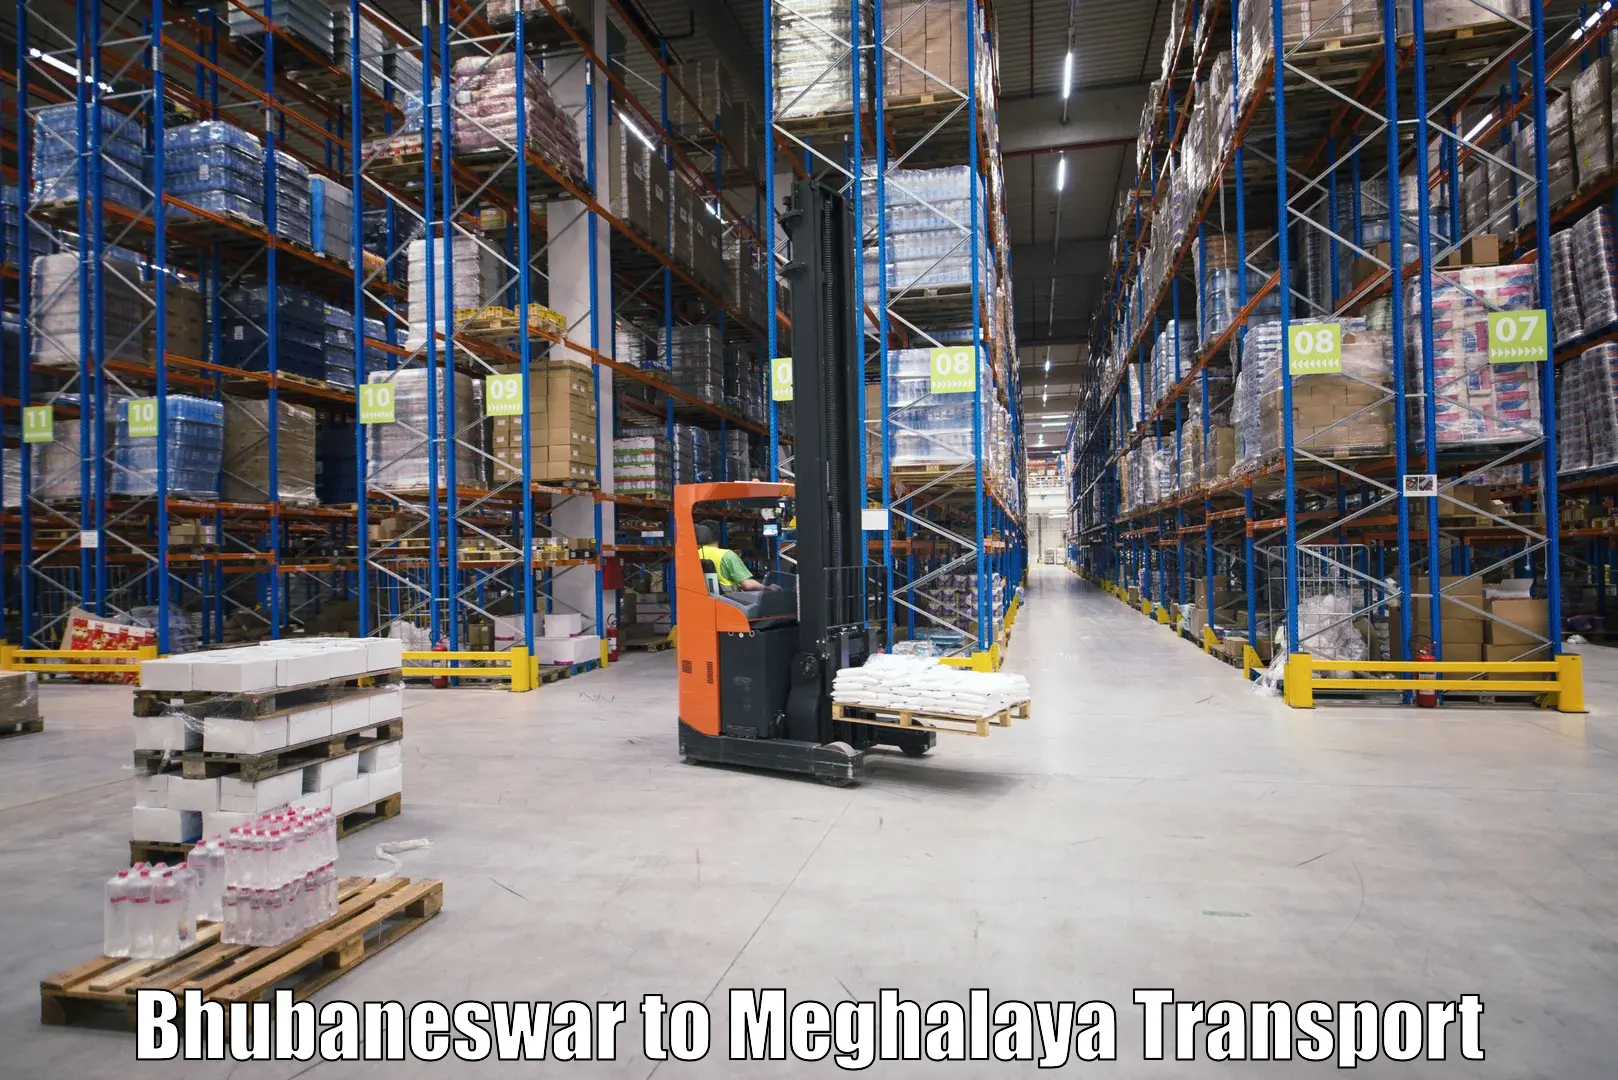 Goods delivery service Bhubaneswar to Meghalaya